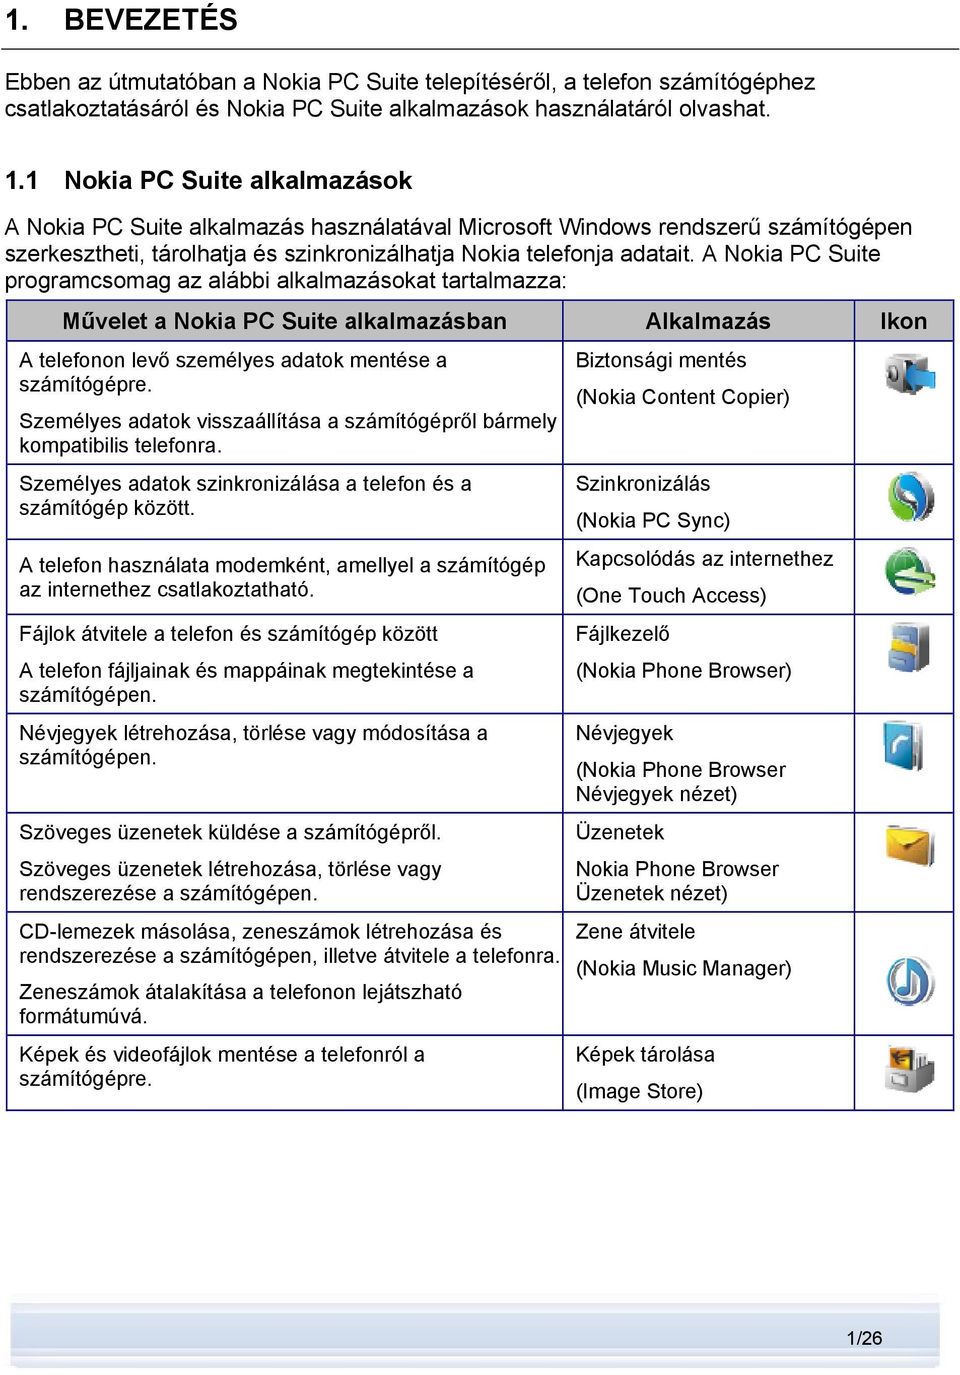 A Nokia PC Suite programcsomag az alábbi alkalmazásokat tartalmazza: Művelet a Nokia PC Suite alkalmazásban Alkalmazás Ikon A telefonon levő személyes adatok mentése a számítógépre.